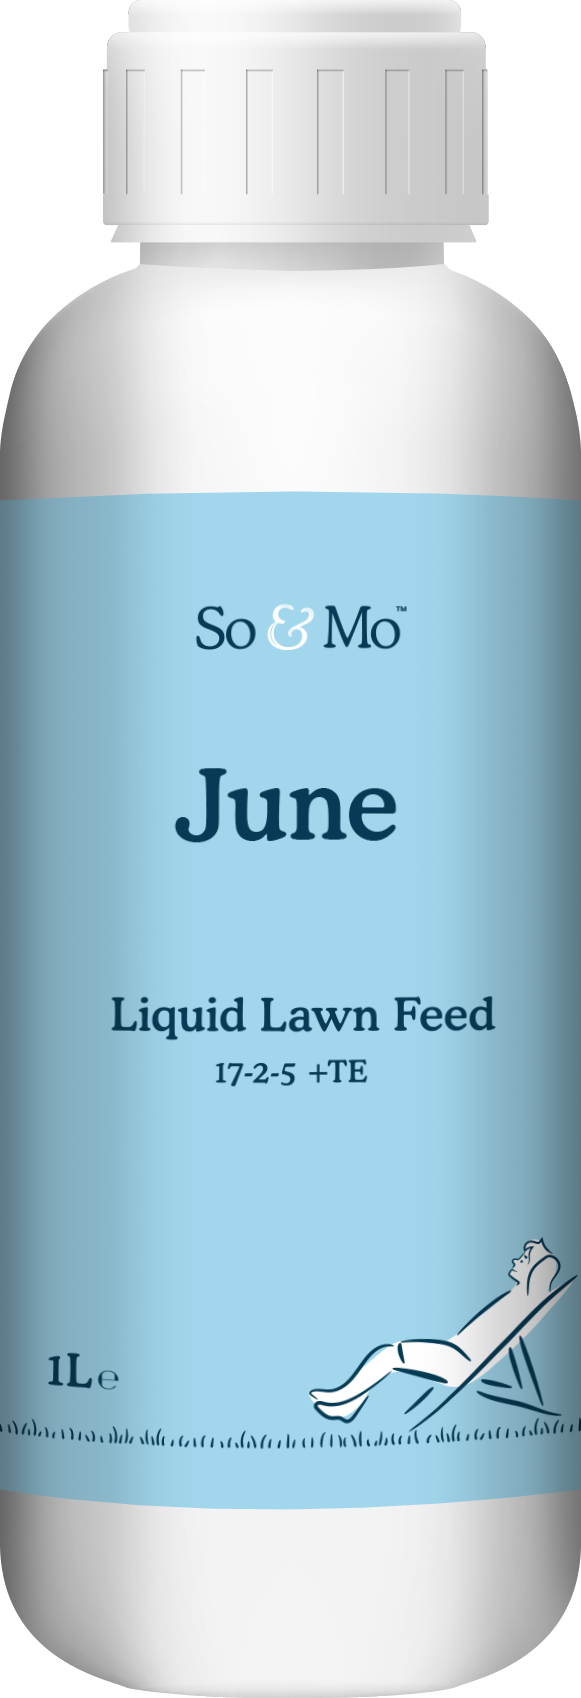 June Liquid Lawn Feed Bottle